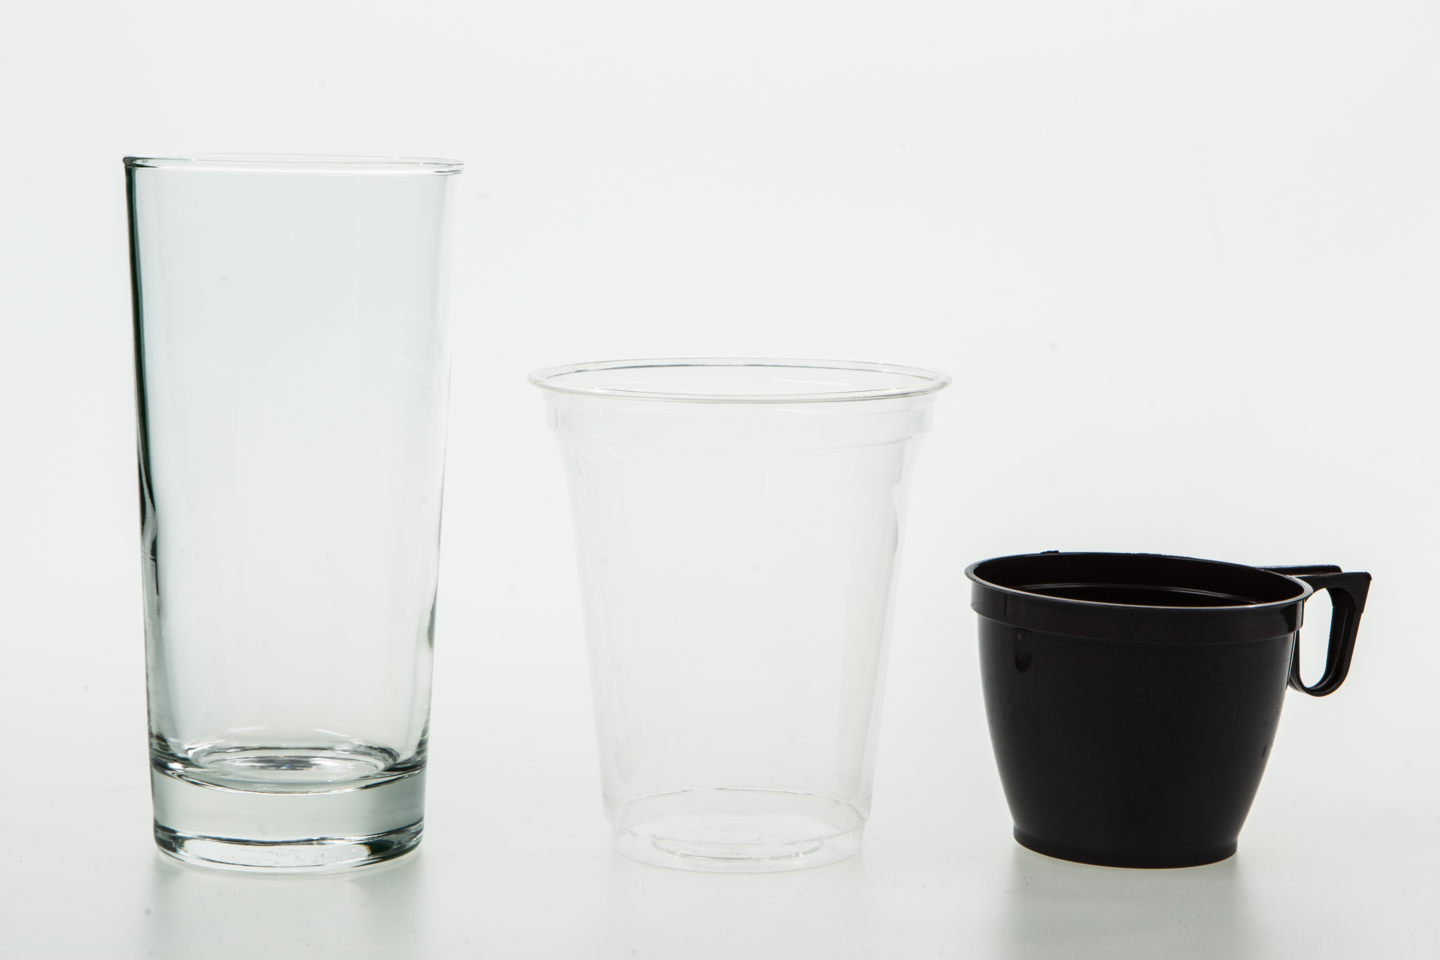 Fotografia przedstawia trzy różne naczynia: szklankę i dwa plastikowe kubki w tym jeden brązowy z uchem.